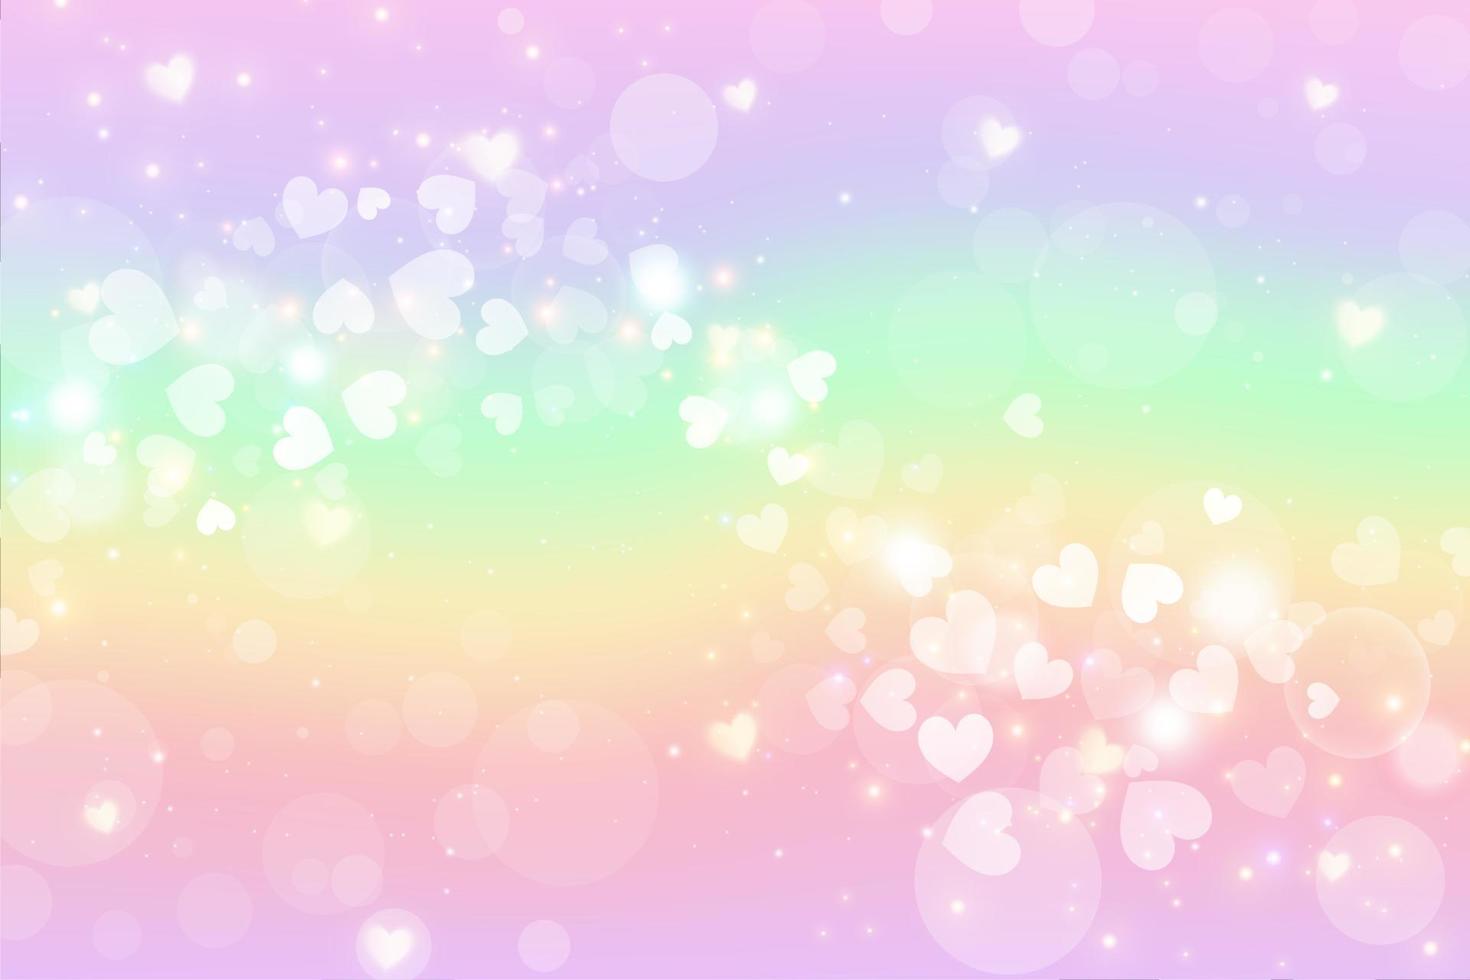 Fantasieaquarellillustration mit Regenbogenpastellhimmel mit Sternen und Herzen. abstrakter einhorn kosmischer hintergrund. Cartoon Girlie-Vektor-Illustration. vektor